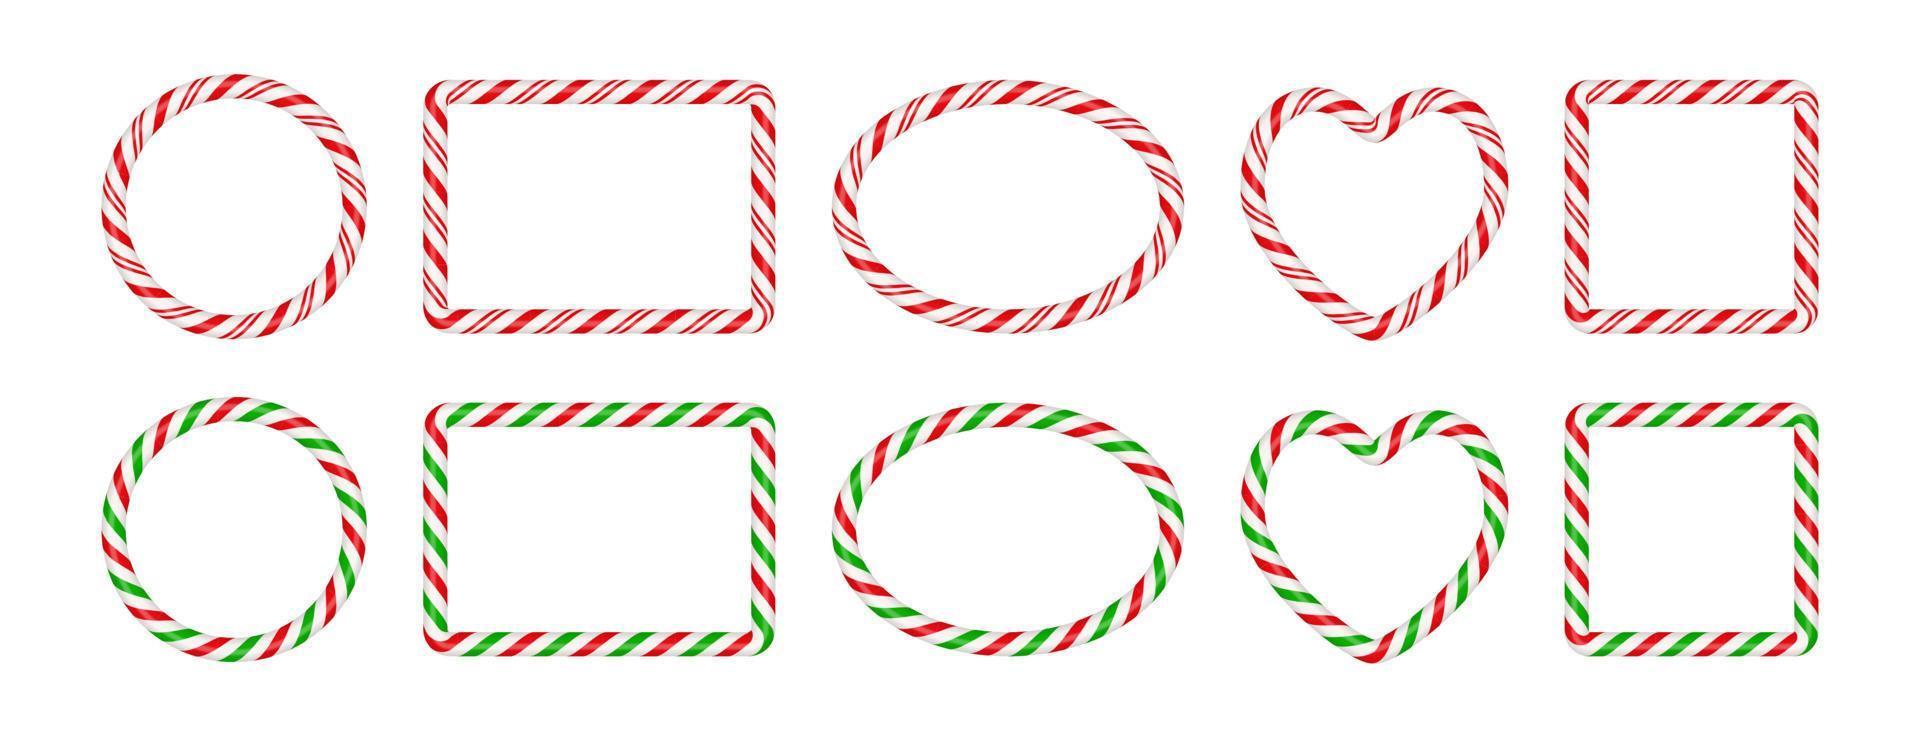 quadros de bastão de doces de natal com listras vermelhas e verdes. círculo de natal, borda oval, quadrada com padrão de pirulito de doces listrado. ilustração em vetor modelo de natal em branco isolada no fundo branco